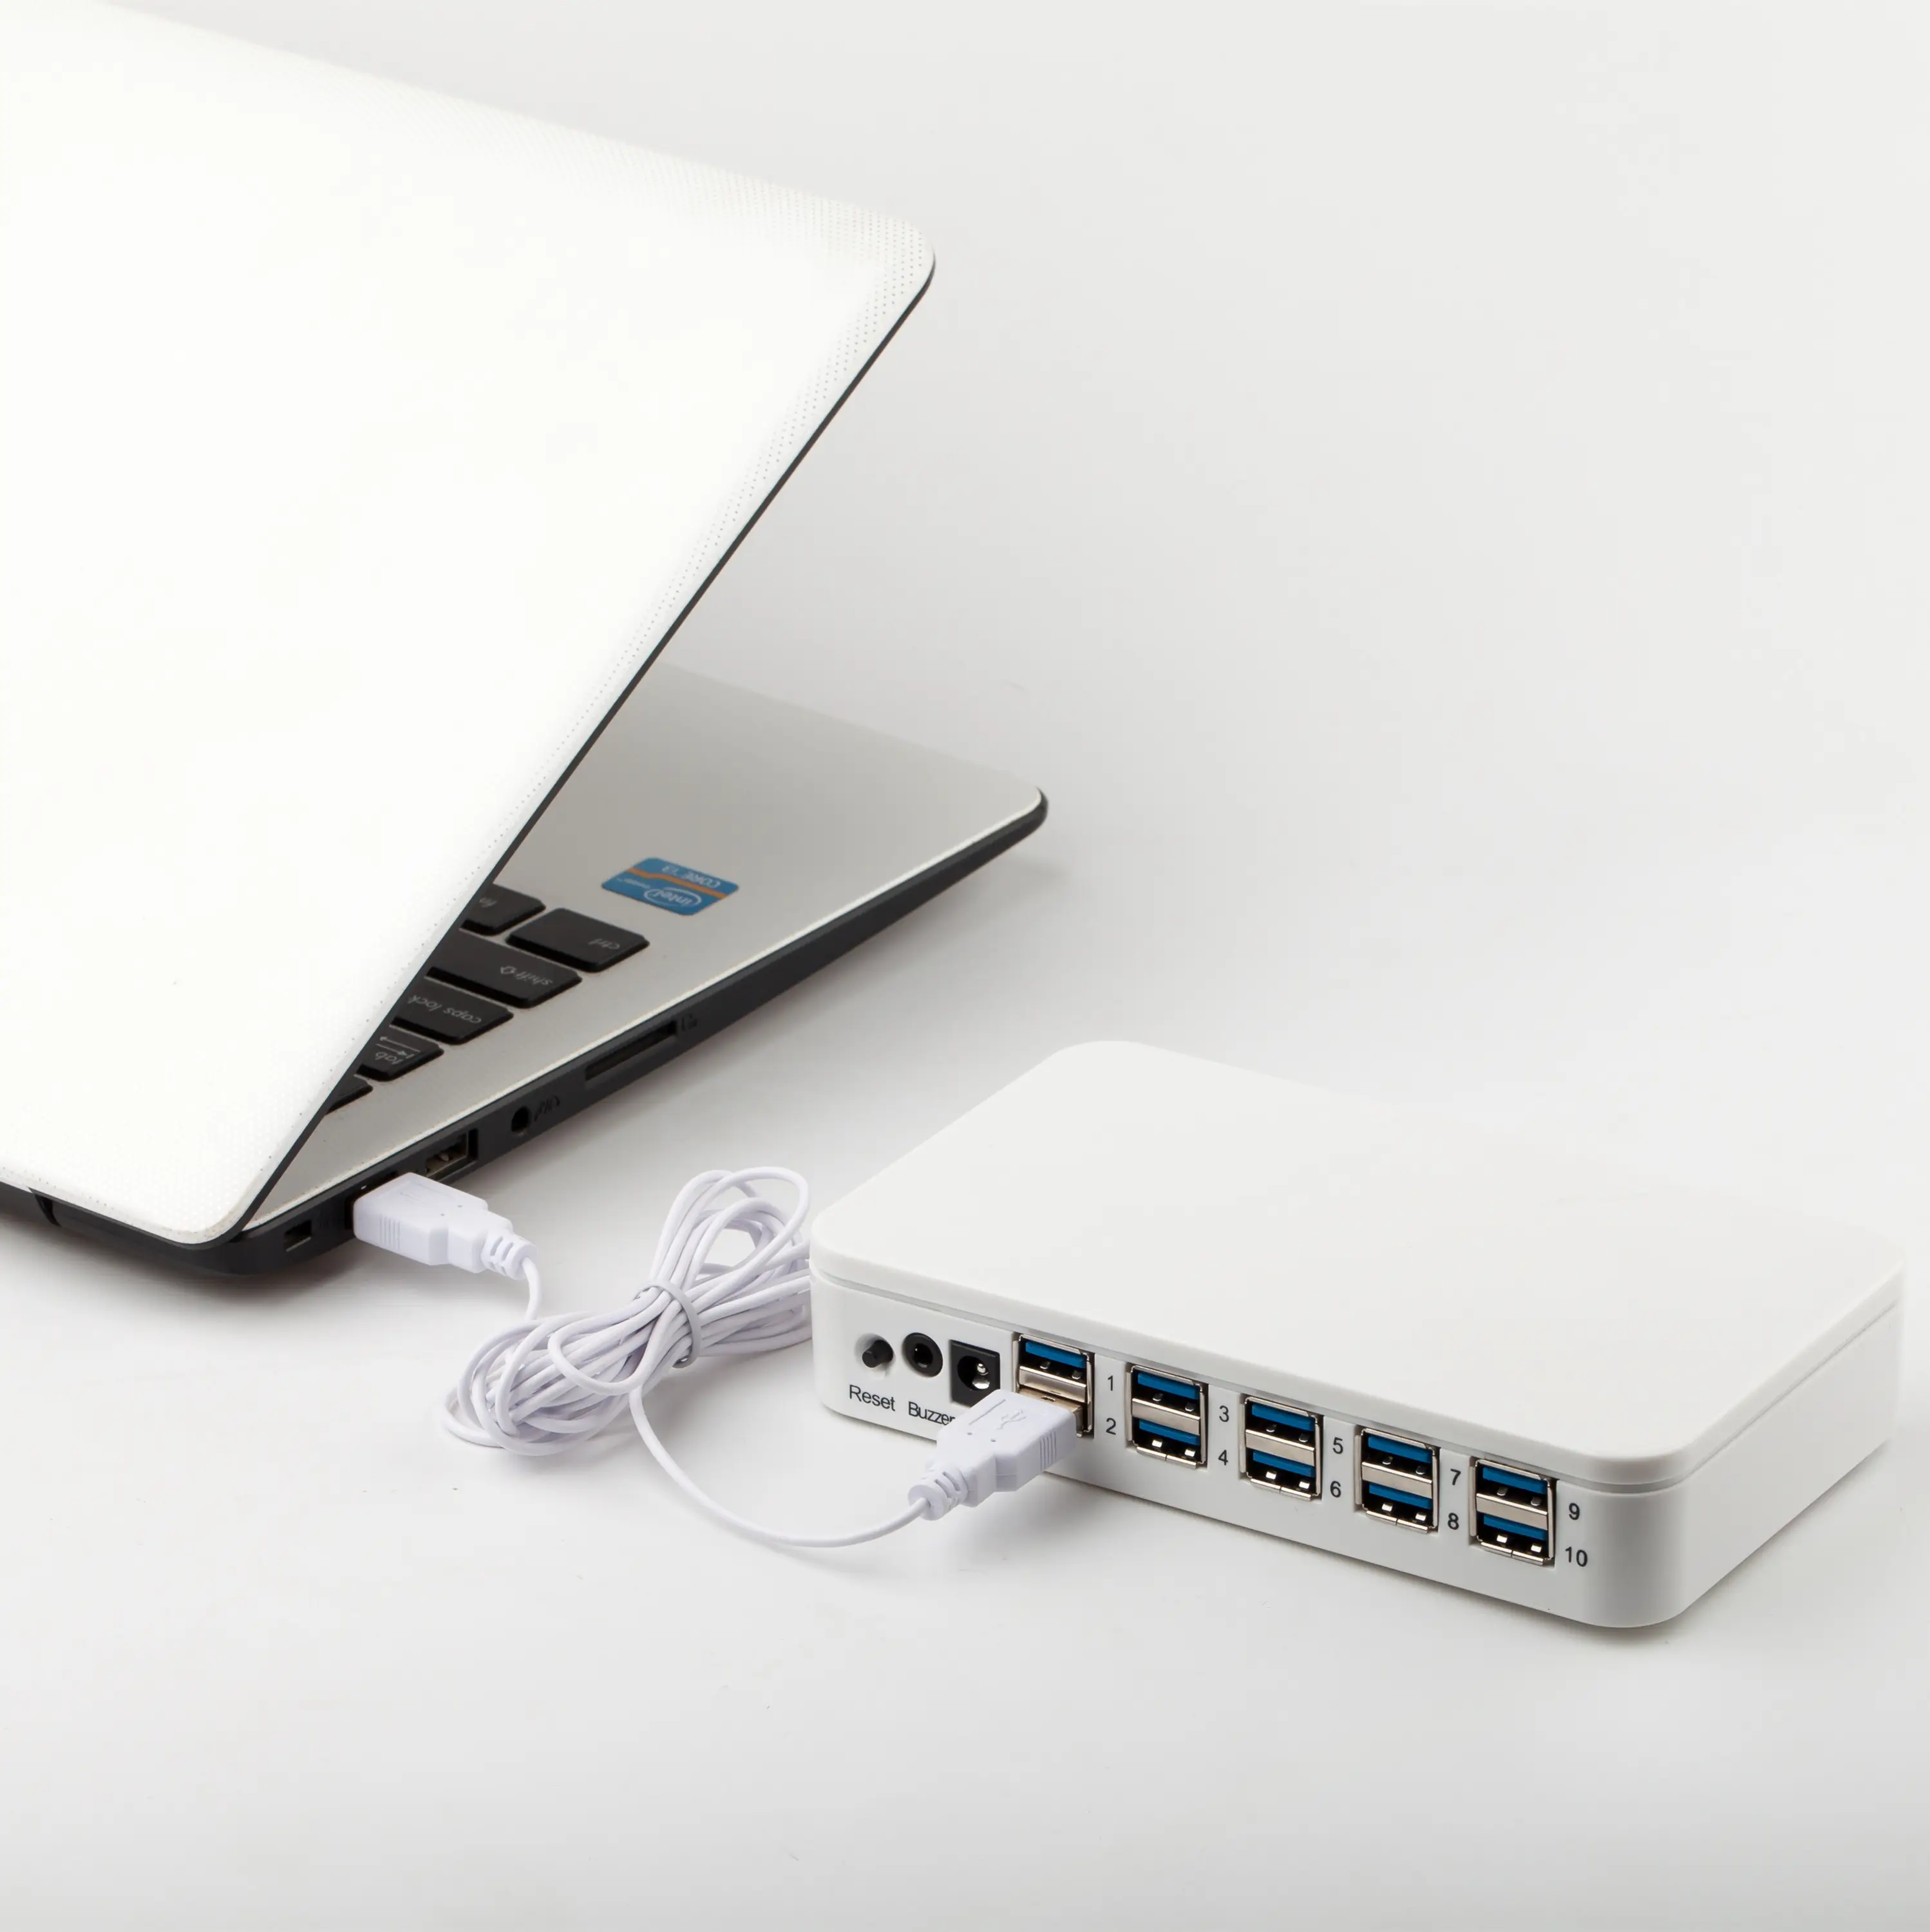 공장 최고 품질 중앙 집중식 10 포트 노트북 보안 디스플레이 경보 (kabel usb 케이블 포함)